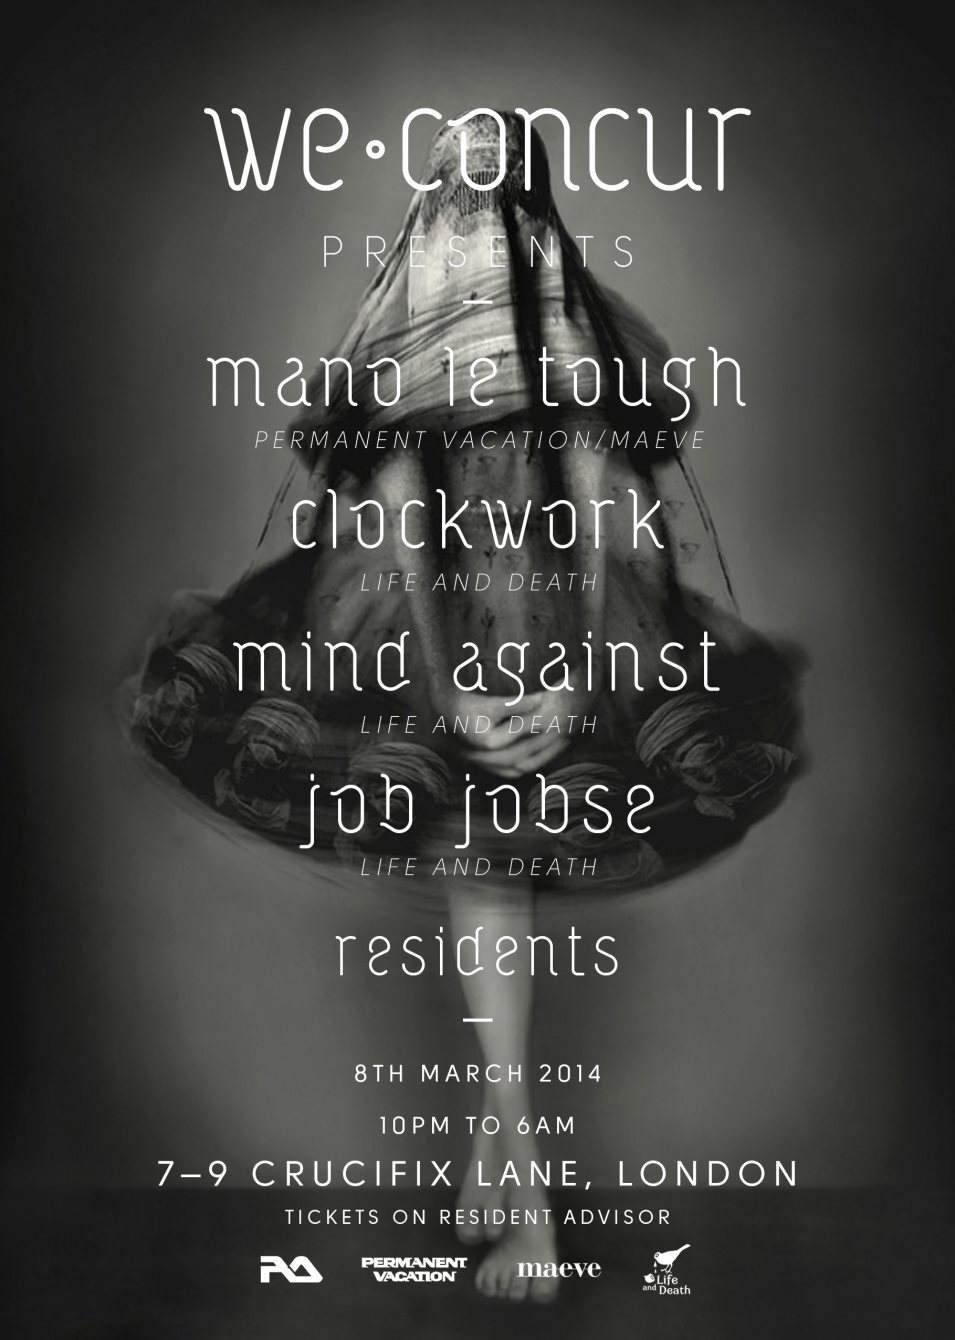 We Concur Launch with Mano Le Tough, Clockwork, Mind Against & Job Jobse - Flyer front